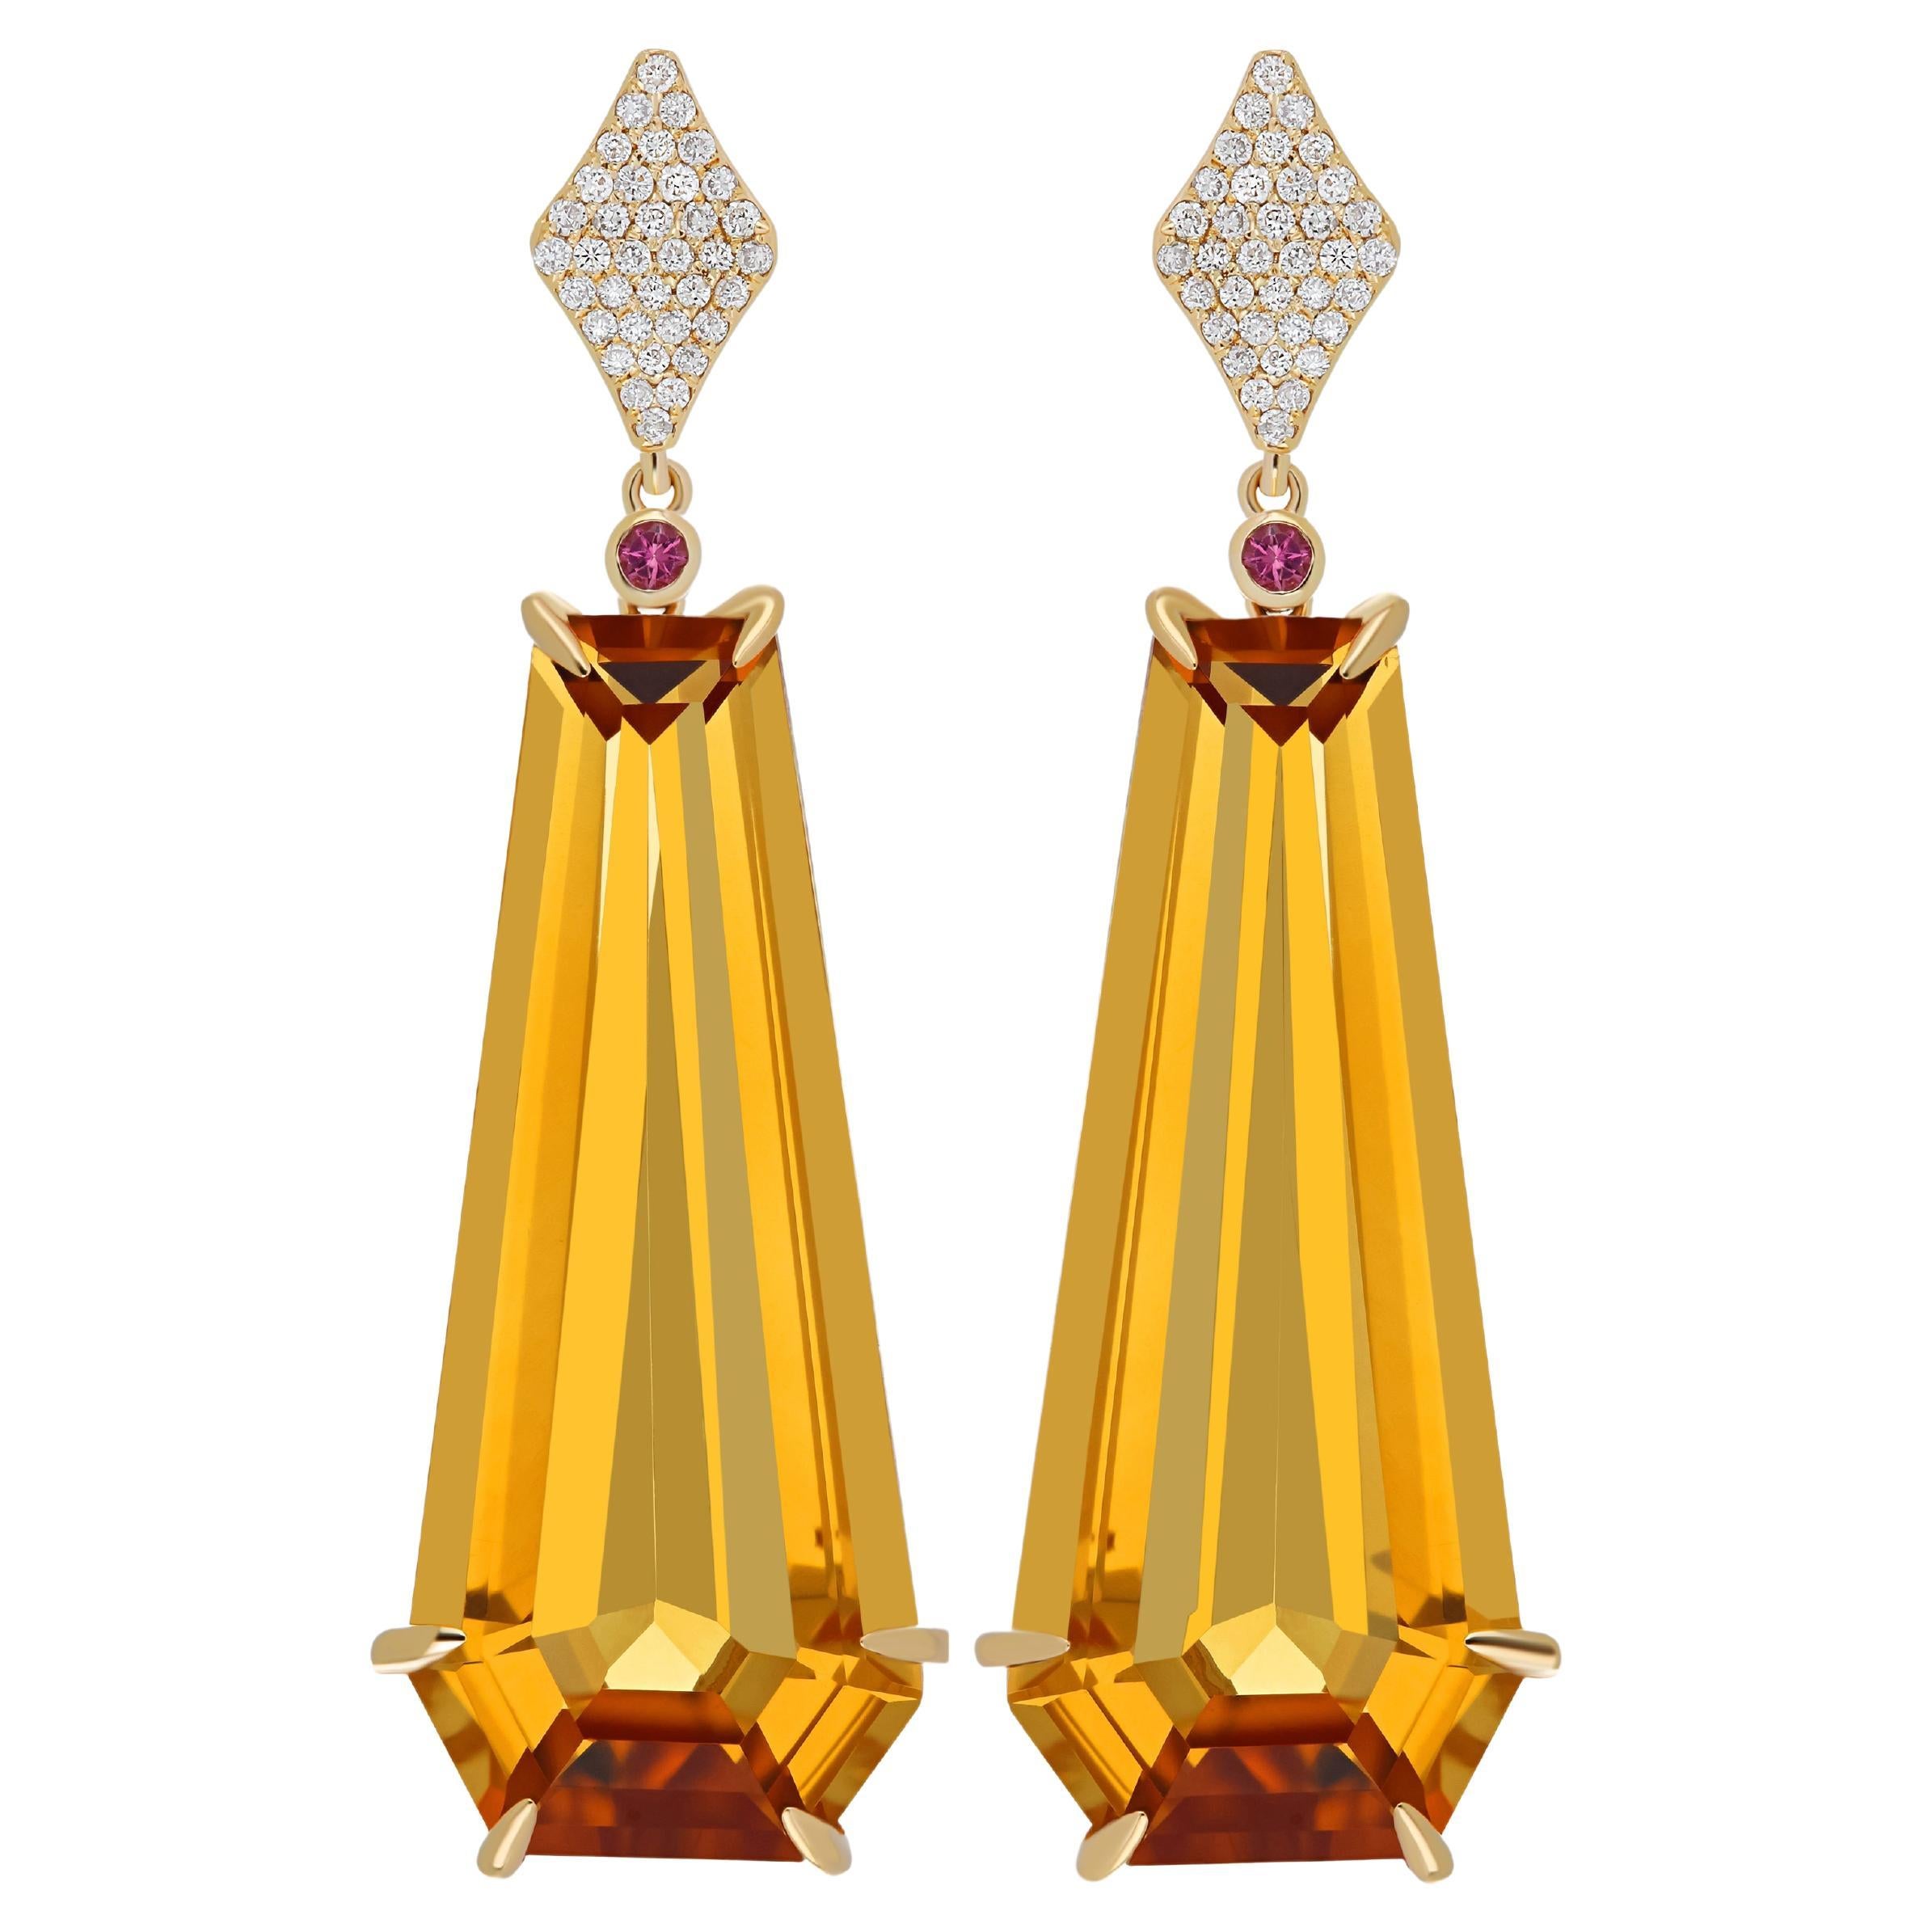 Boucles d'oreilles cloutées en or jaune 14 carats, citrine, tourmaline rose et diamants